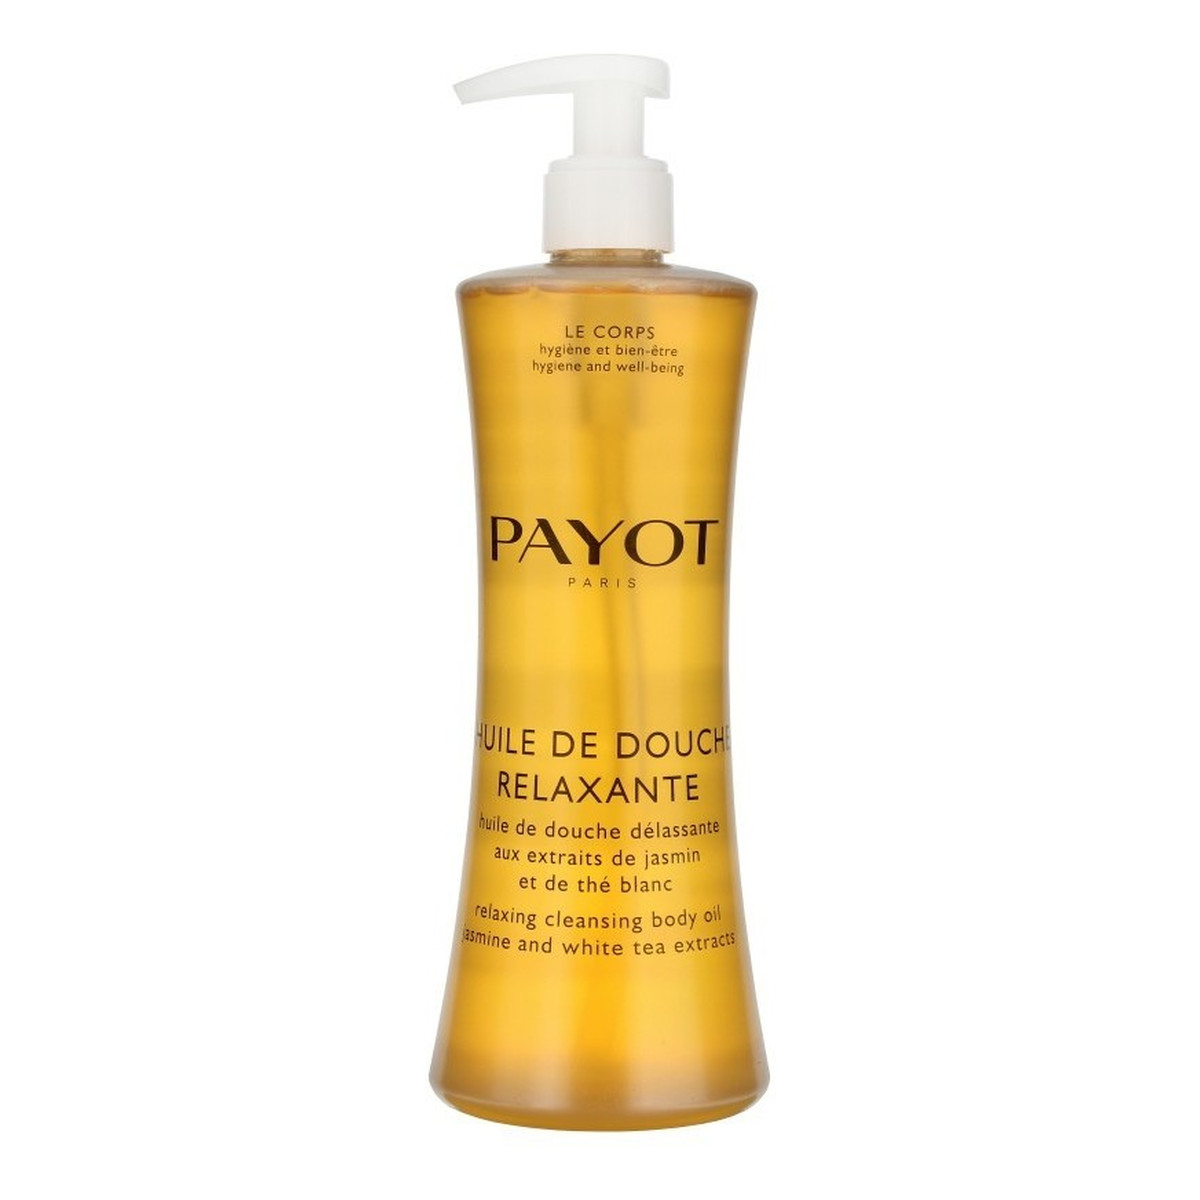 Payot Le Corps Relaxing Cleansing Body Oil Relaksująco-oczyszczający olejek do mycia ciała 400ml